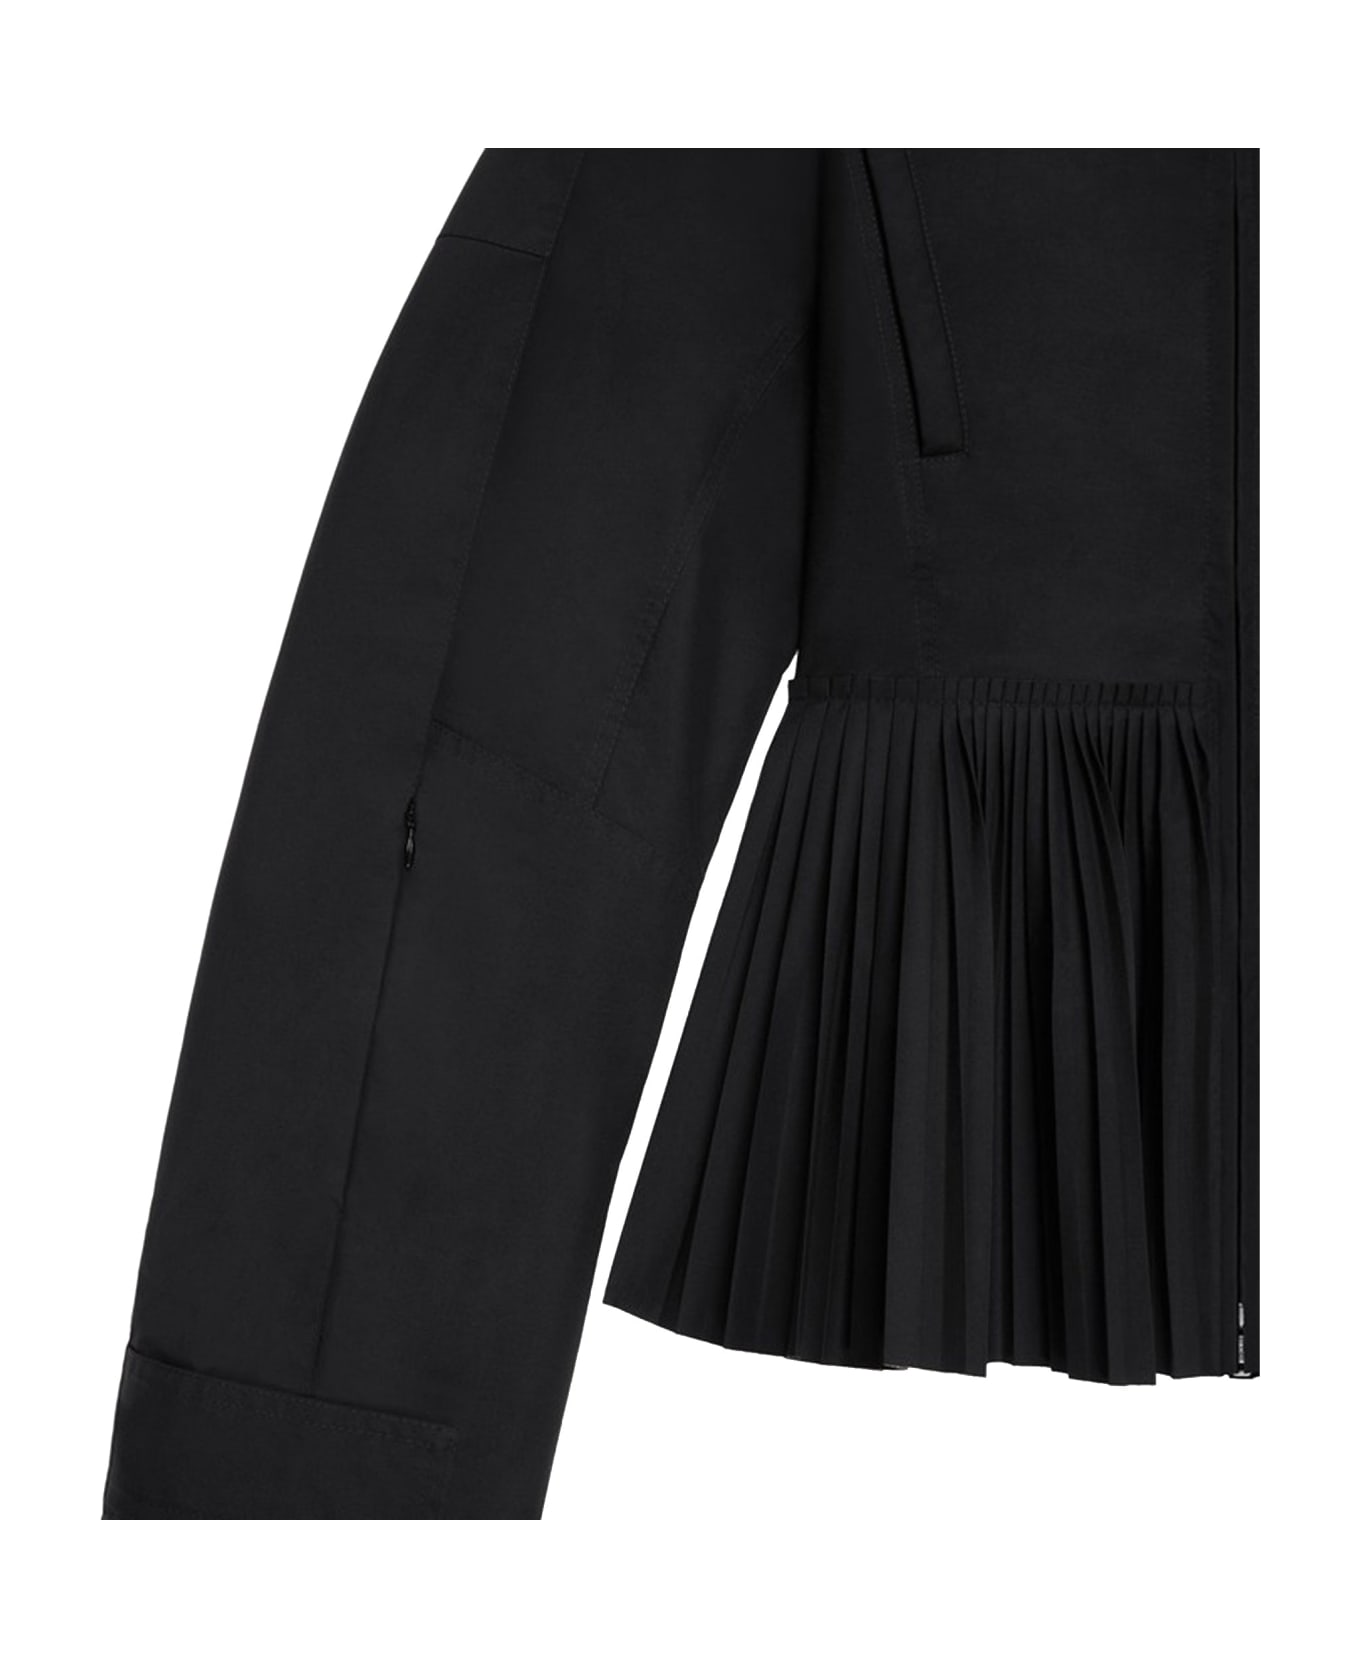 Givenchy Plisse Hooded Jacket - Black ジャケット